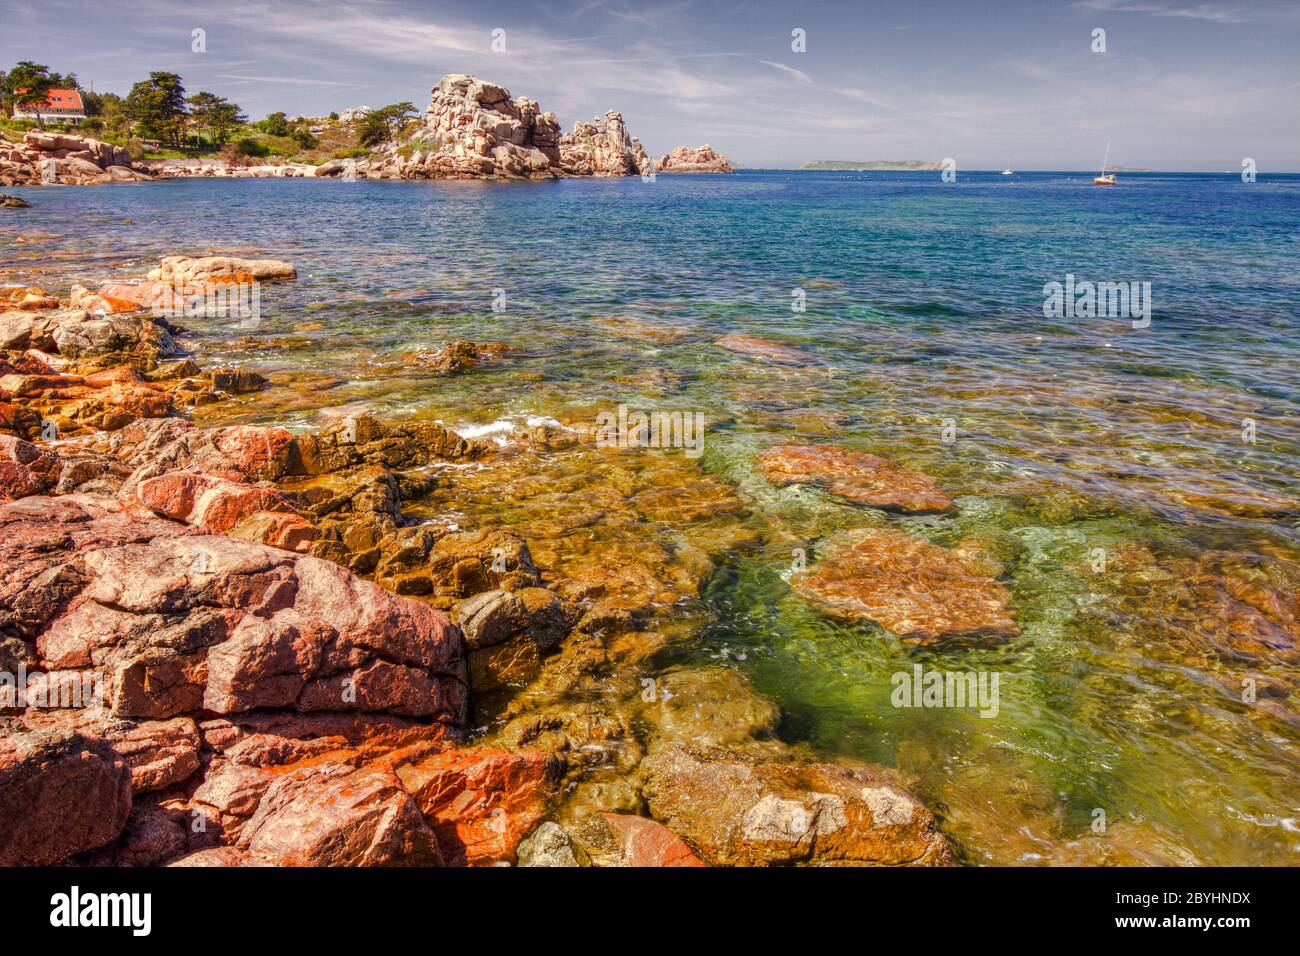 Ploumonach, Pink Granite Coast, Brittany, France Stock Photo